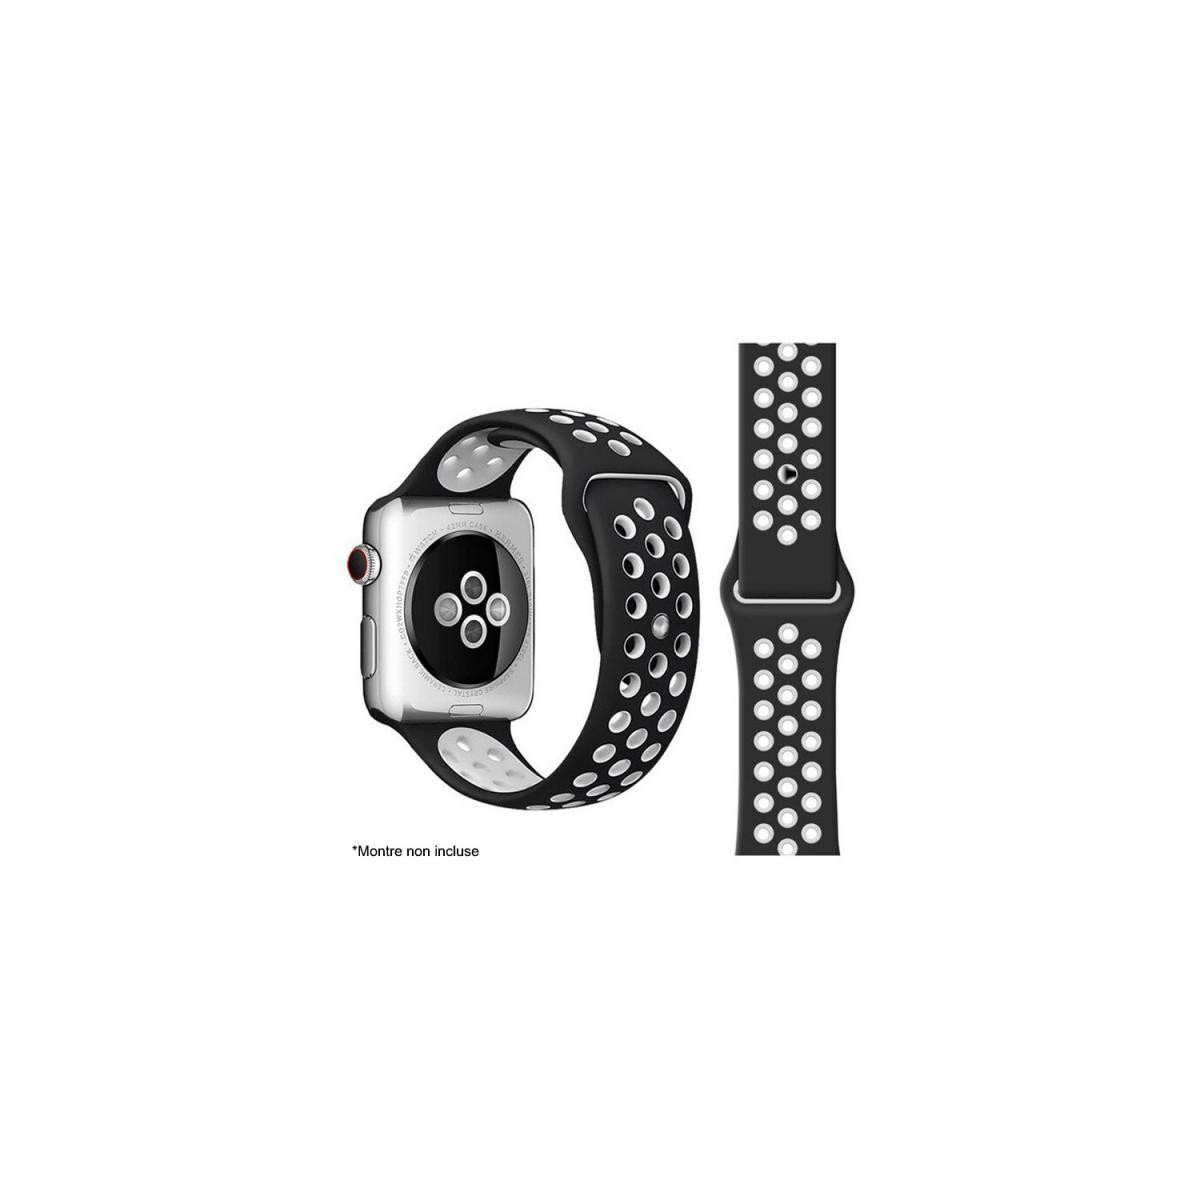 Ibroz - Ibroz Bracelet Apple Watch Sport 44mm noir et blanc - Accessoires Apple Watch